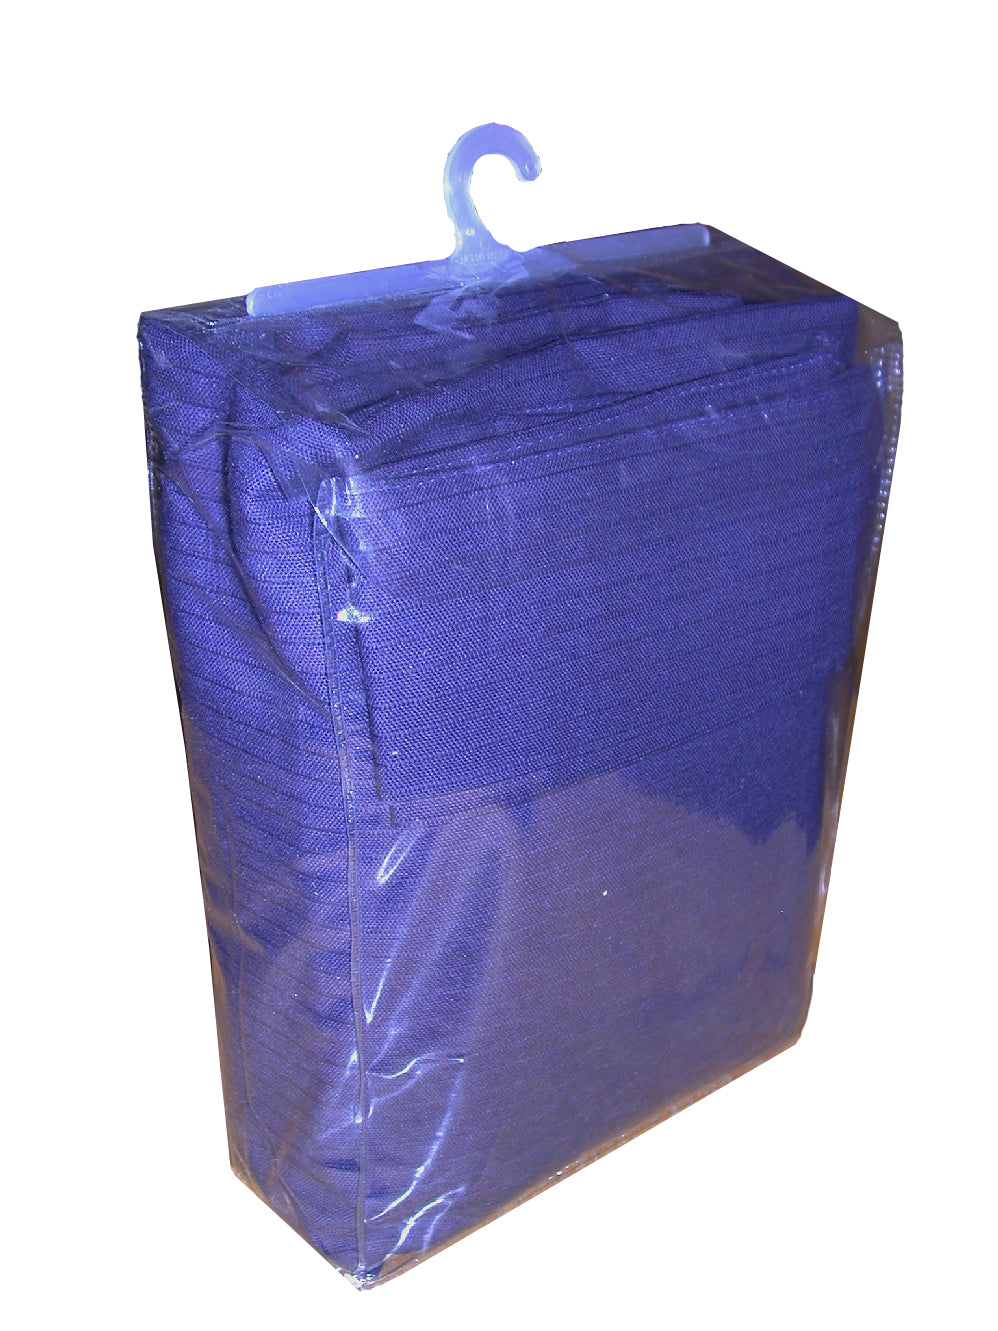 JLHS-0005 Heat-Sealed Bag